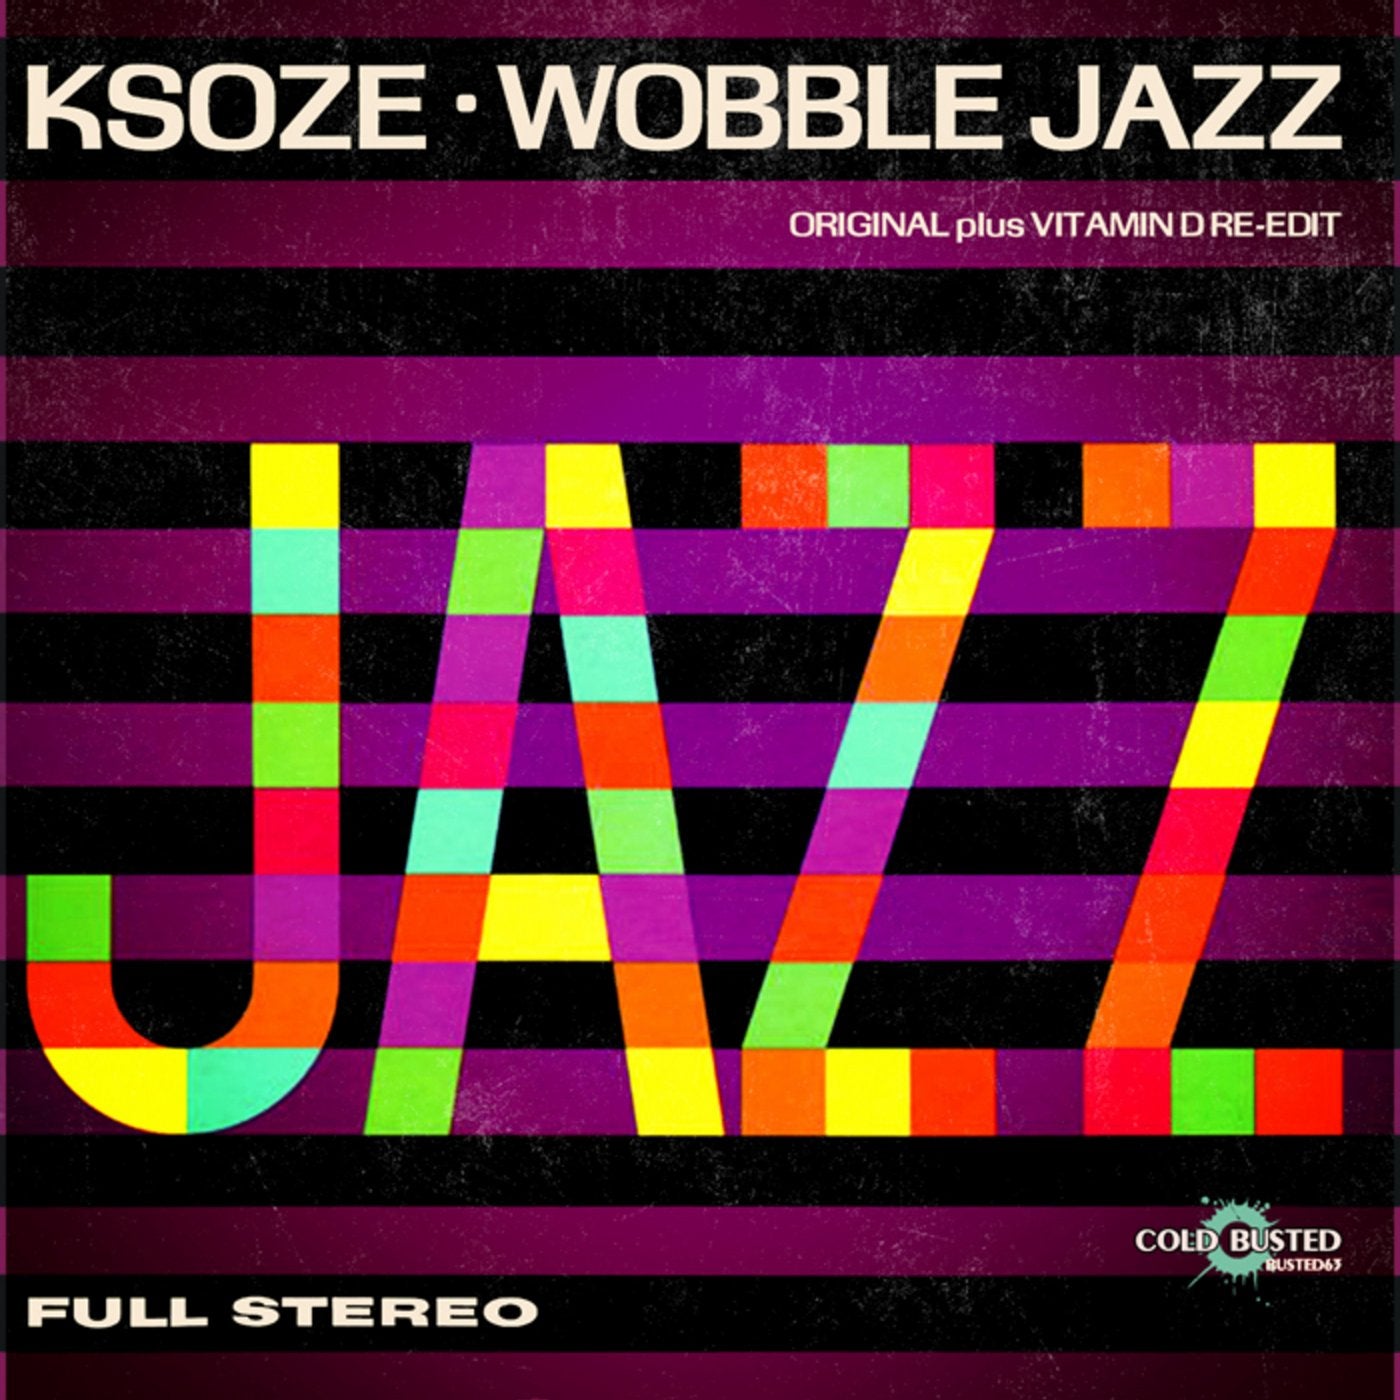 Wobble Jazz